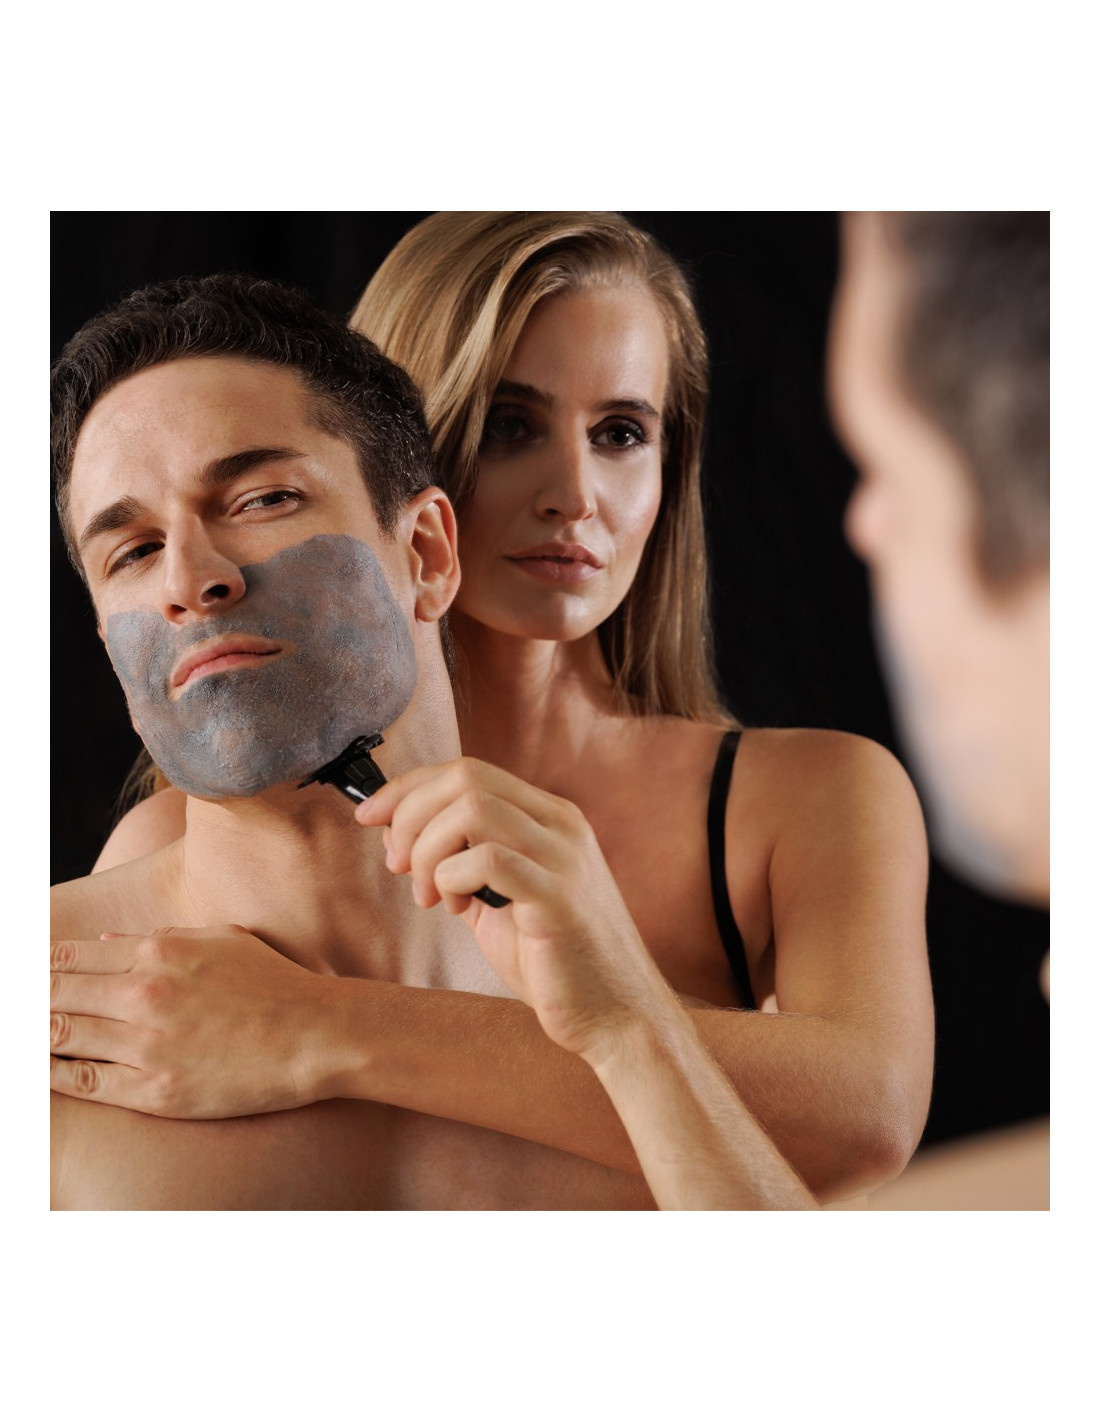 Mann rasiert sich mit rasierklingen-elegant-glide von Omro hinter Ihm steht eine Frau und schaut ihm zu.